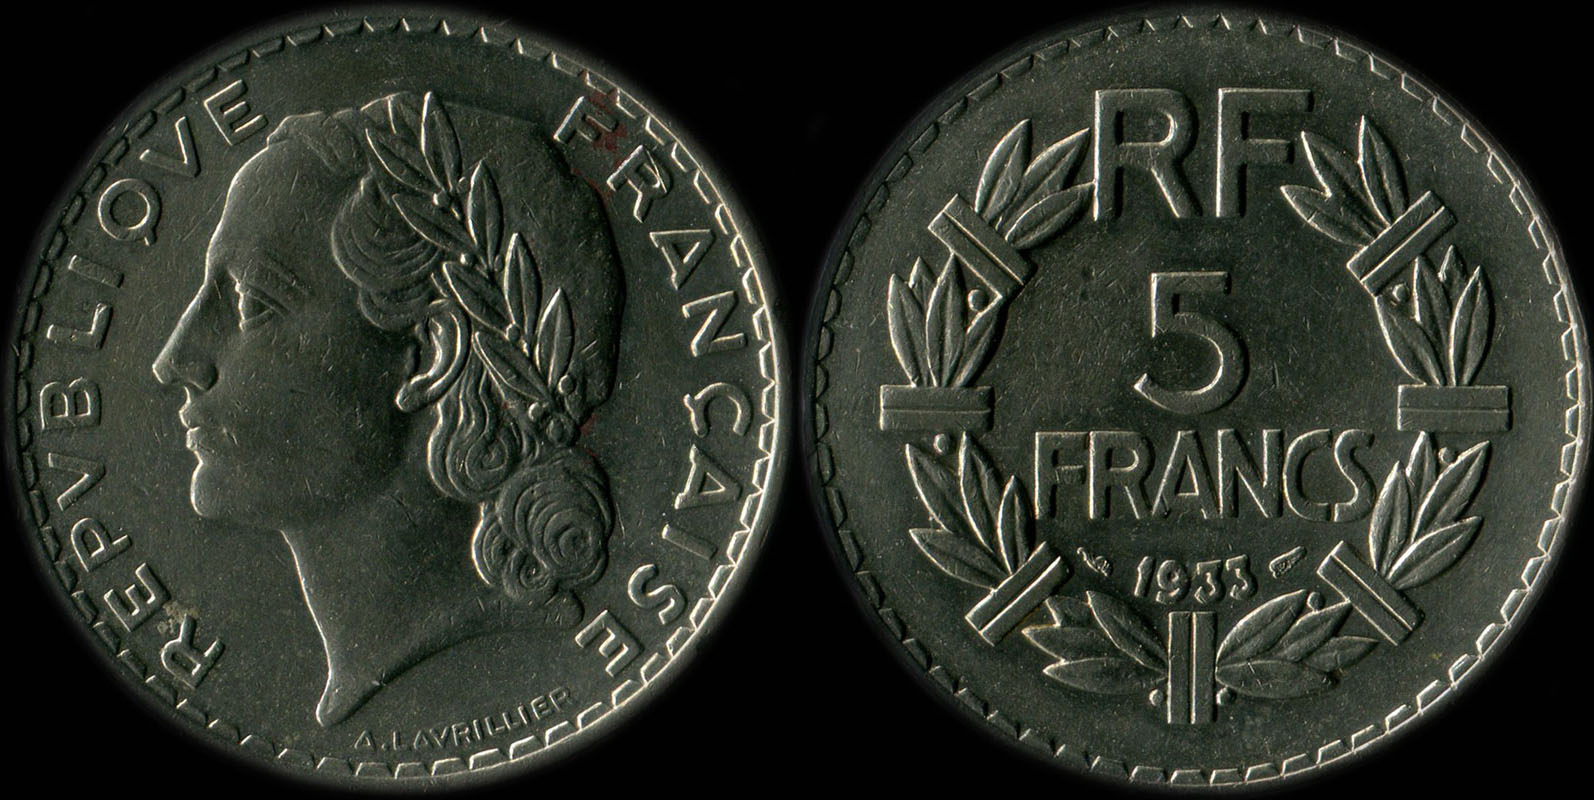 Pice de 5 francs Lavrillier 1933